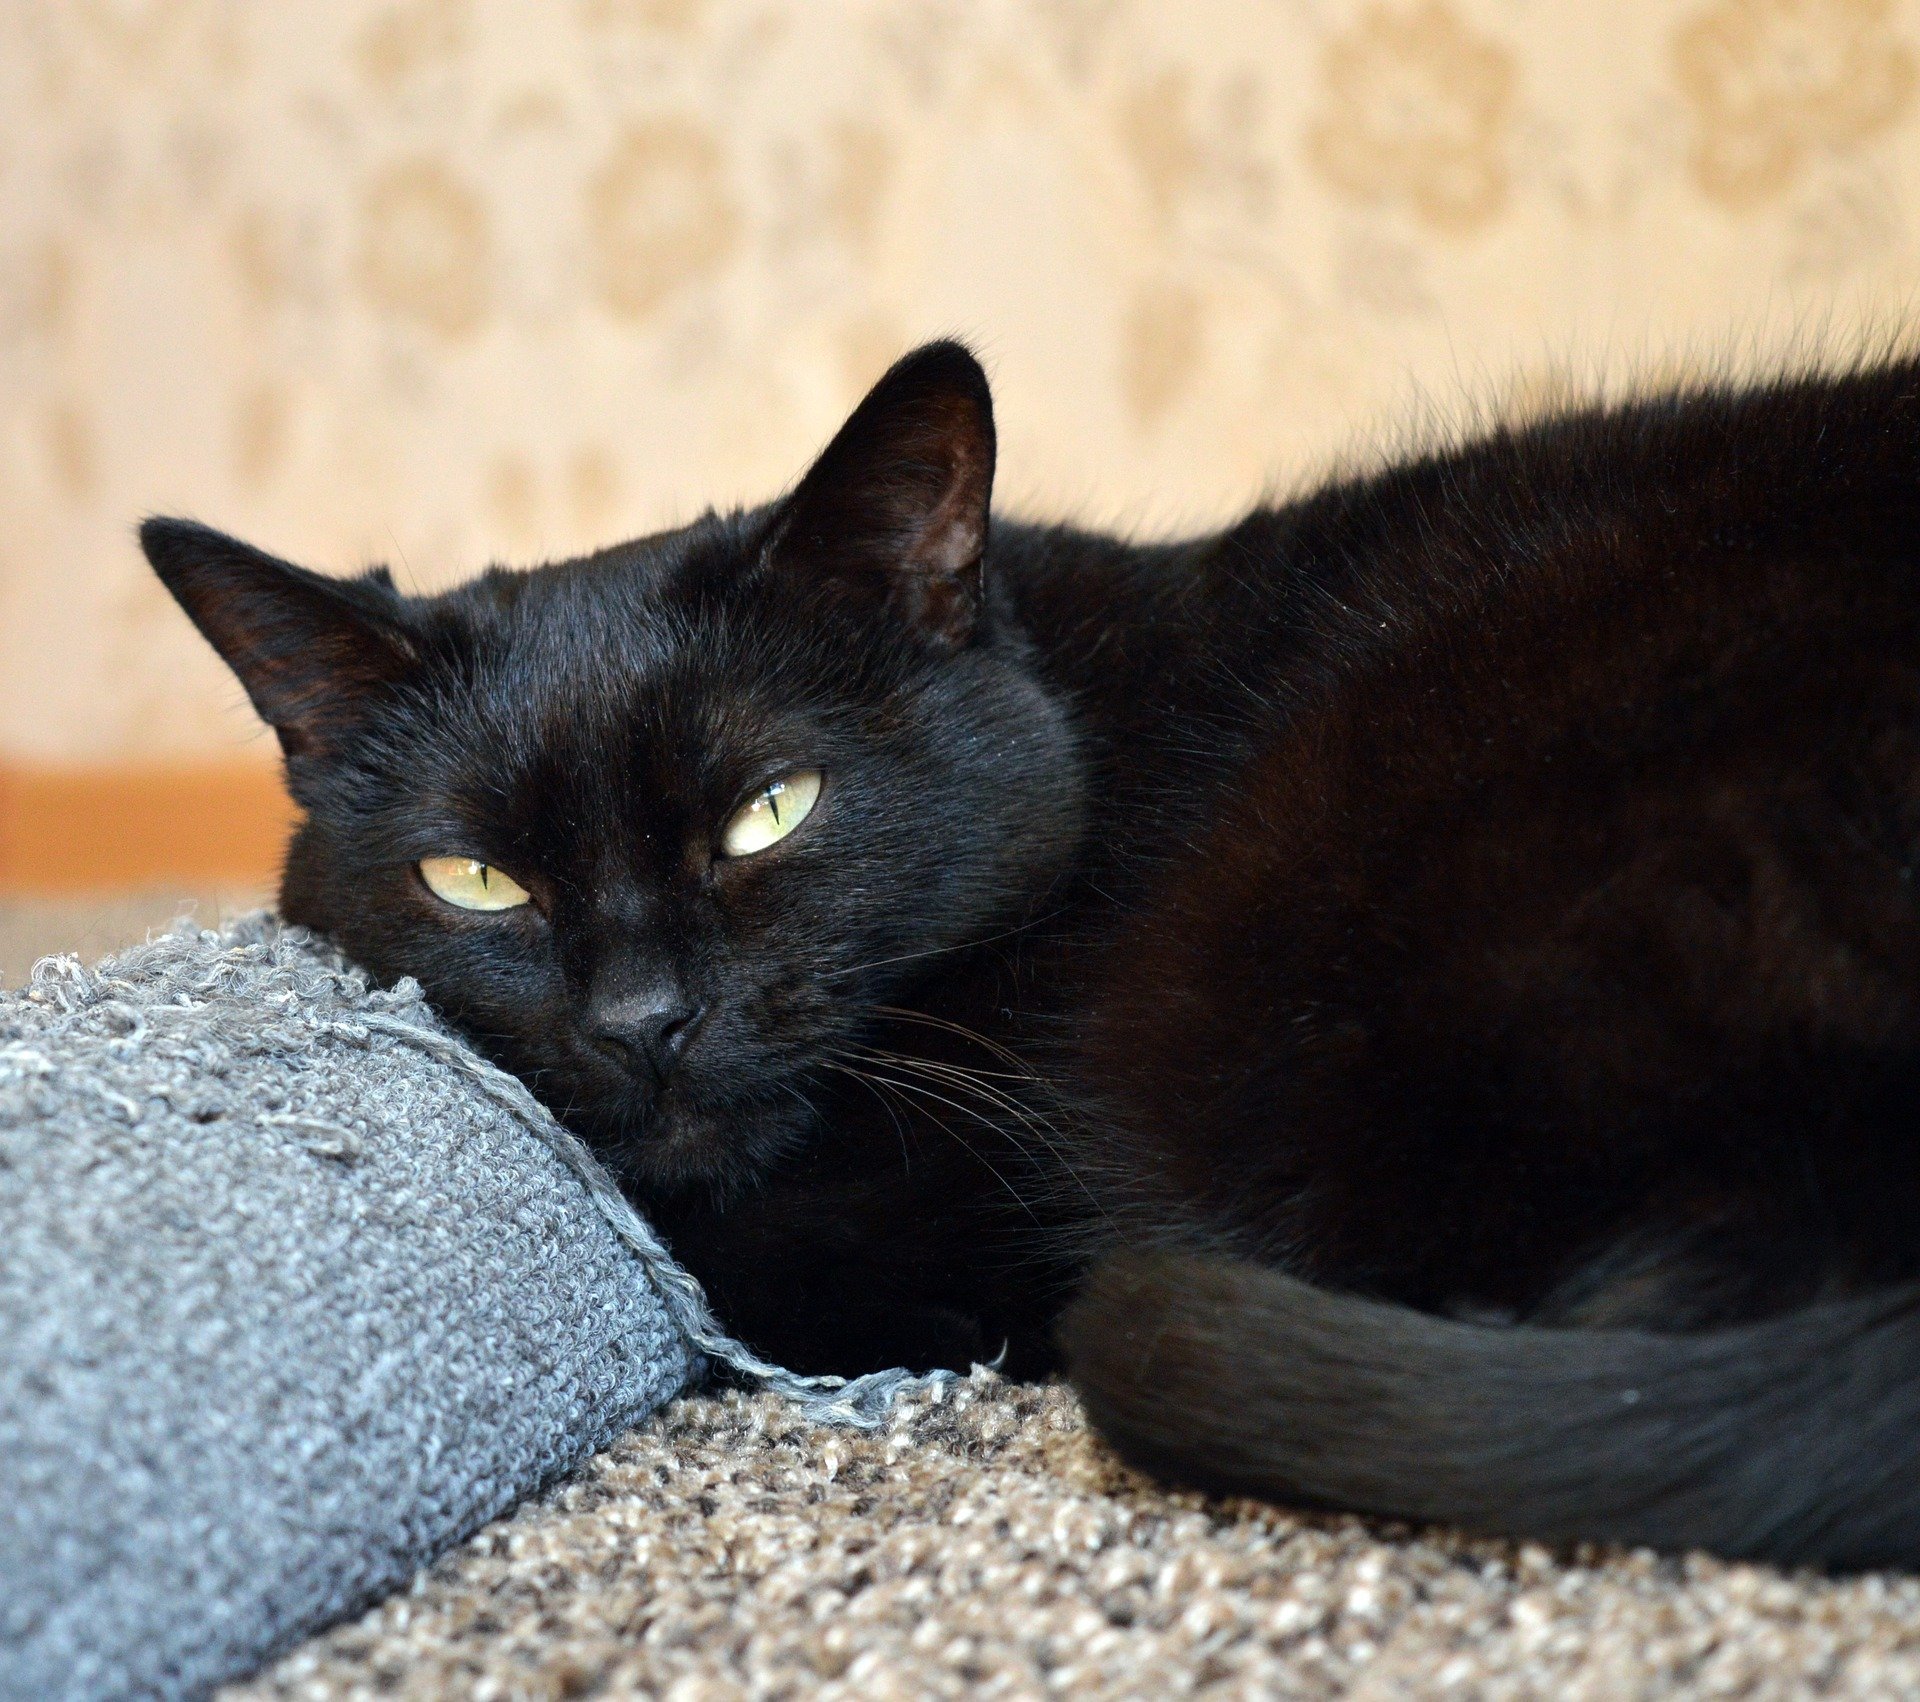 Un chat noir. | Source: Pixabay